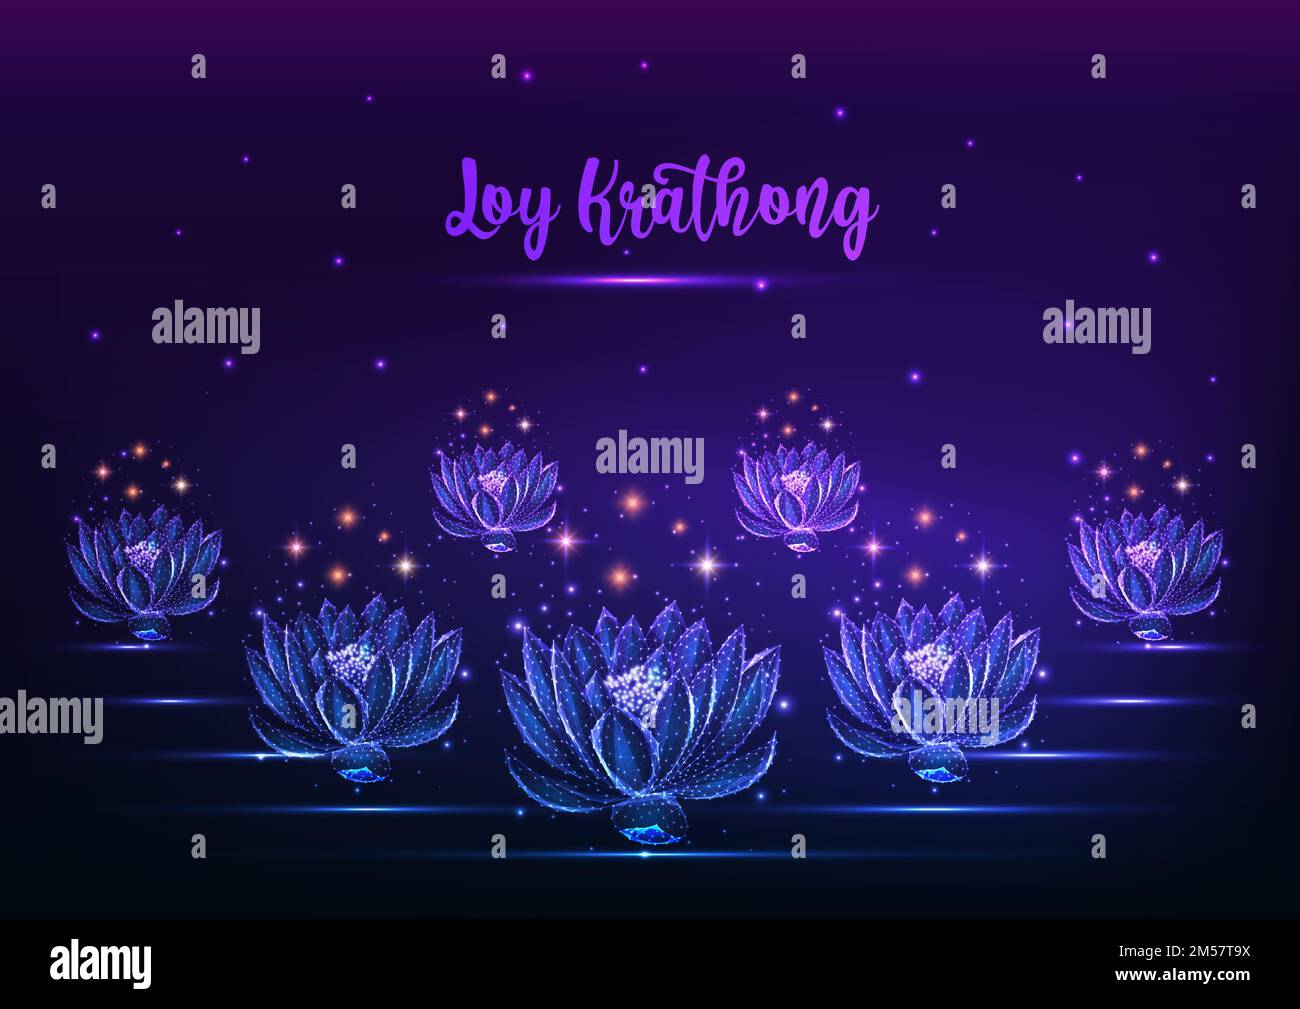 Loy Krathong tai festival web banner modello con galleggiante incandescente basso poligonale loto acqua giglio fiori e cielo stellato su sfondo blu scuro viola Illustrazione Vettoriale